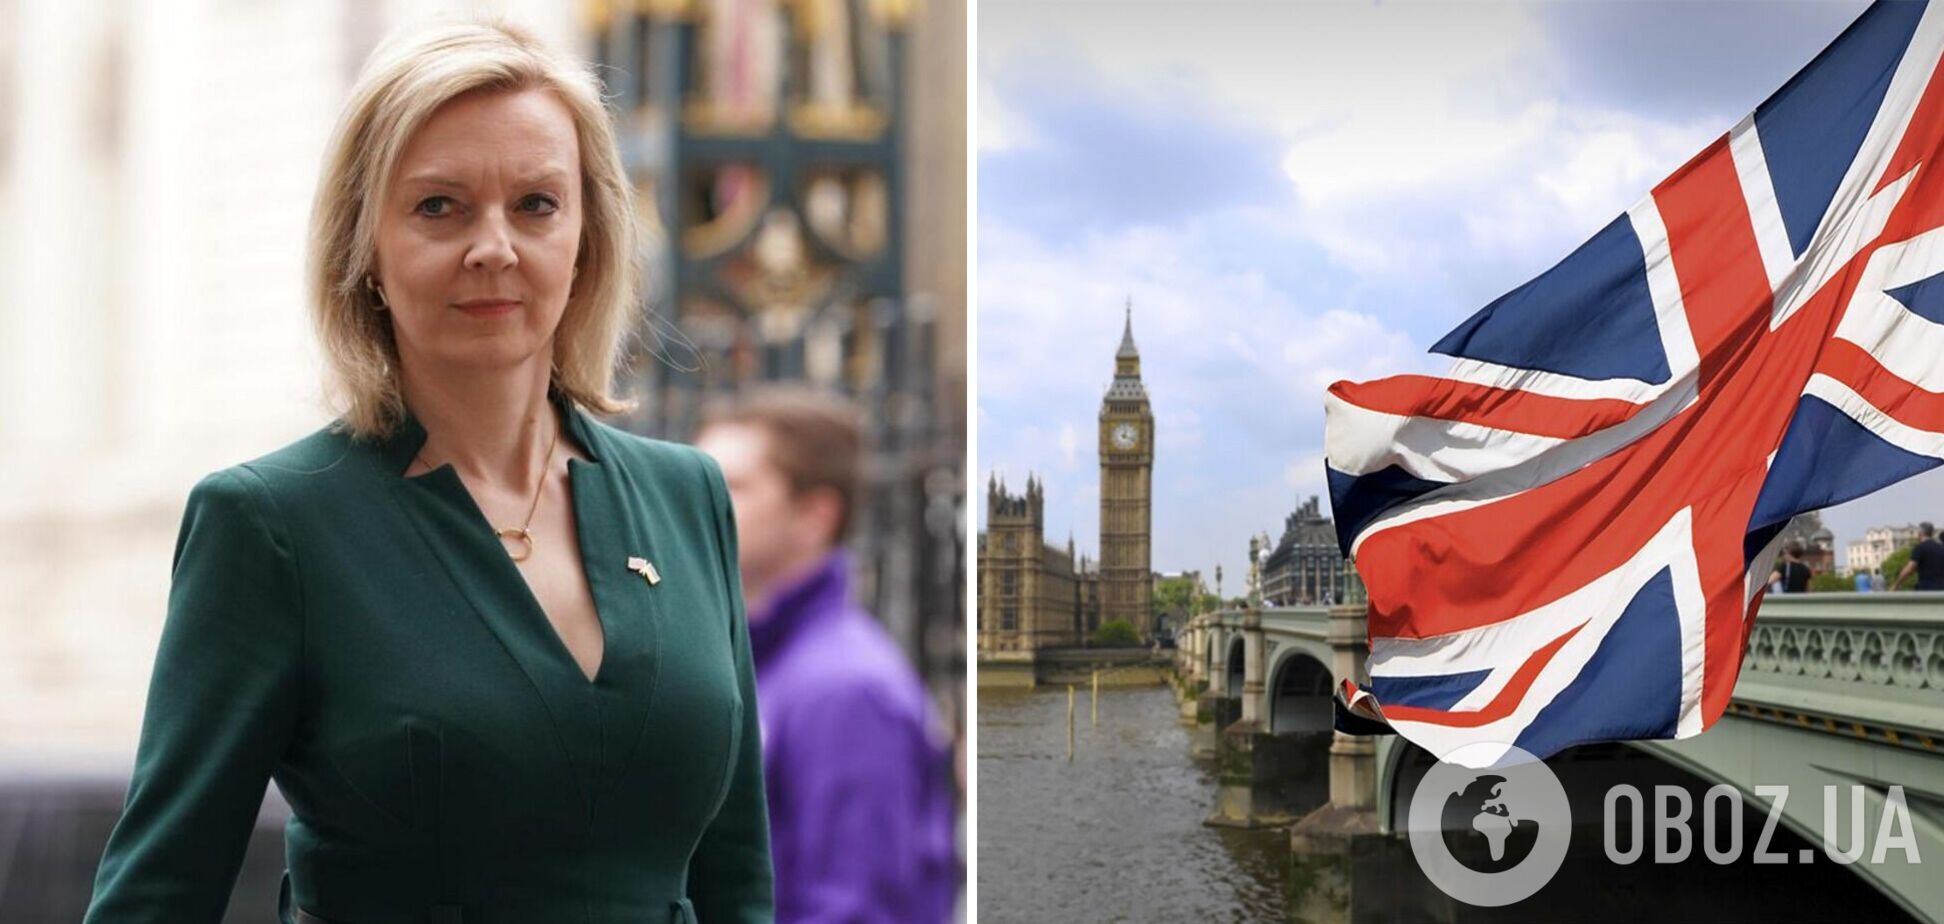 Ліз Трасс, яка обіцяла зробити все для перемоги України, висунула свою кандидатуру на пост прем'єра Британії